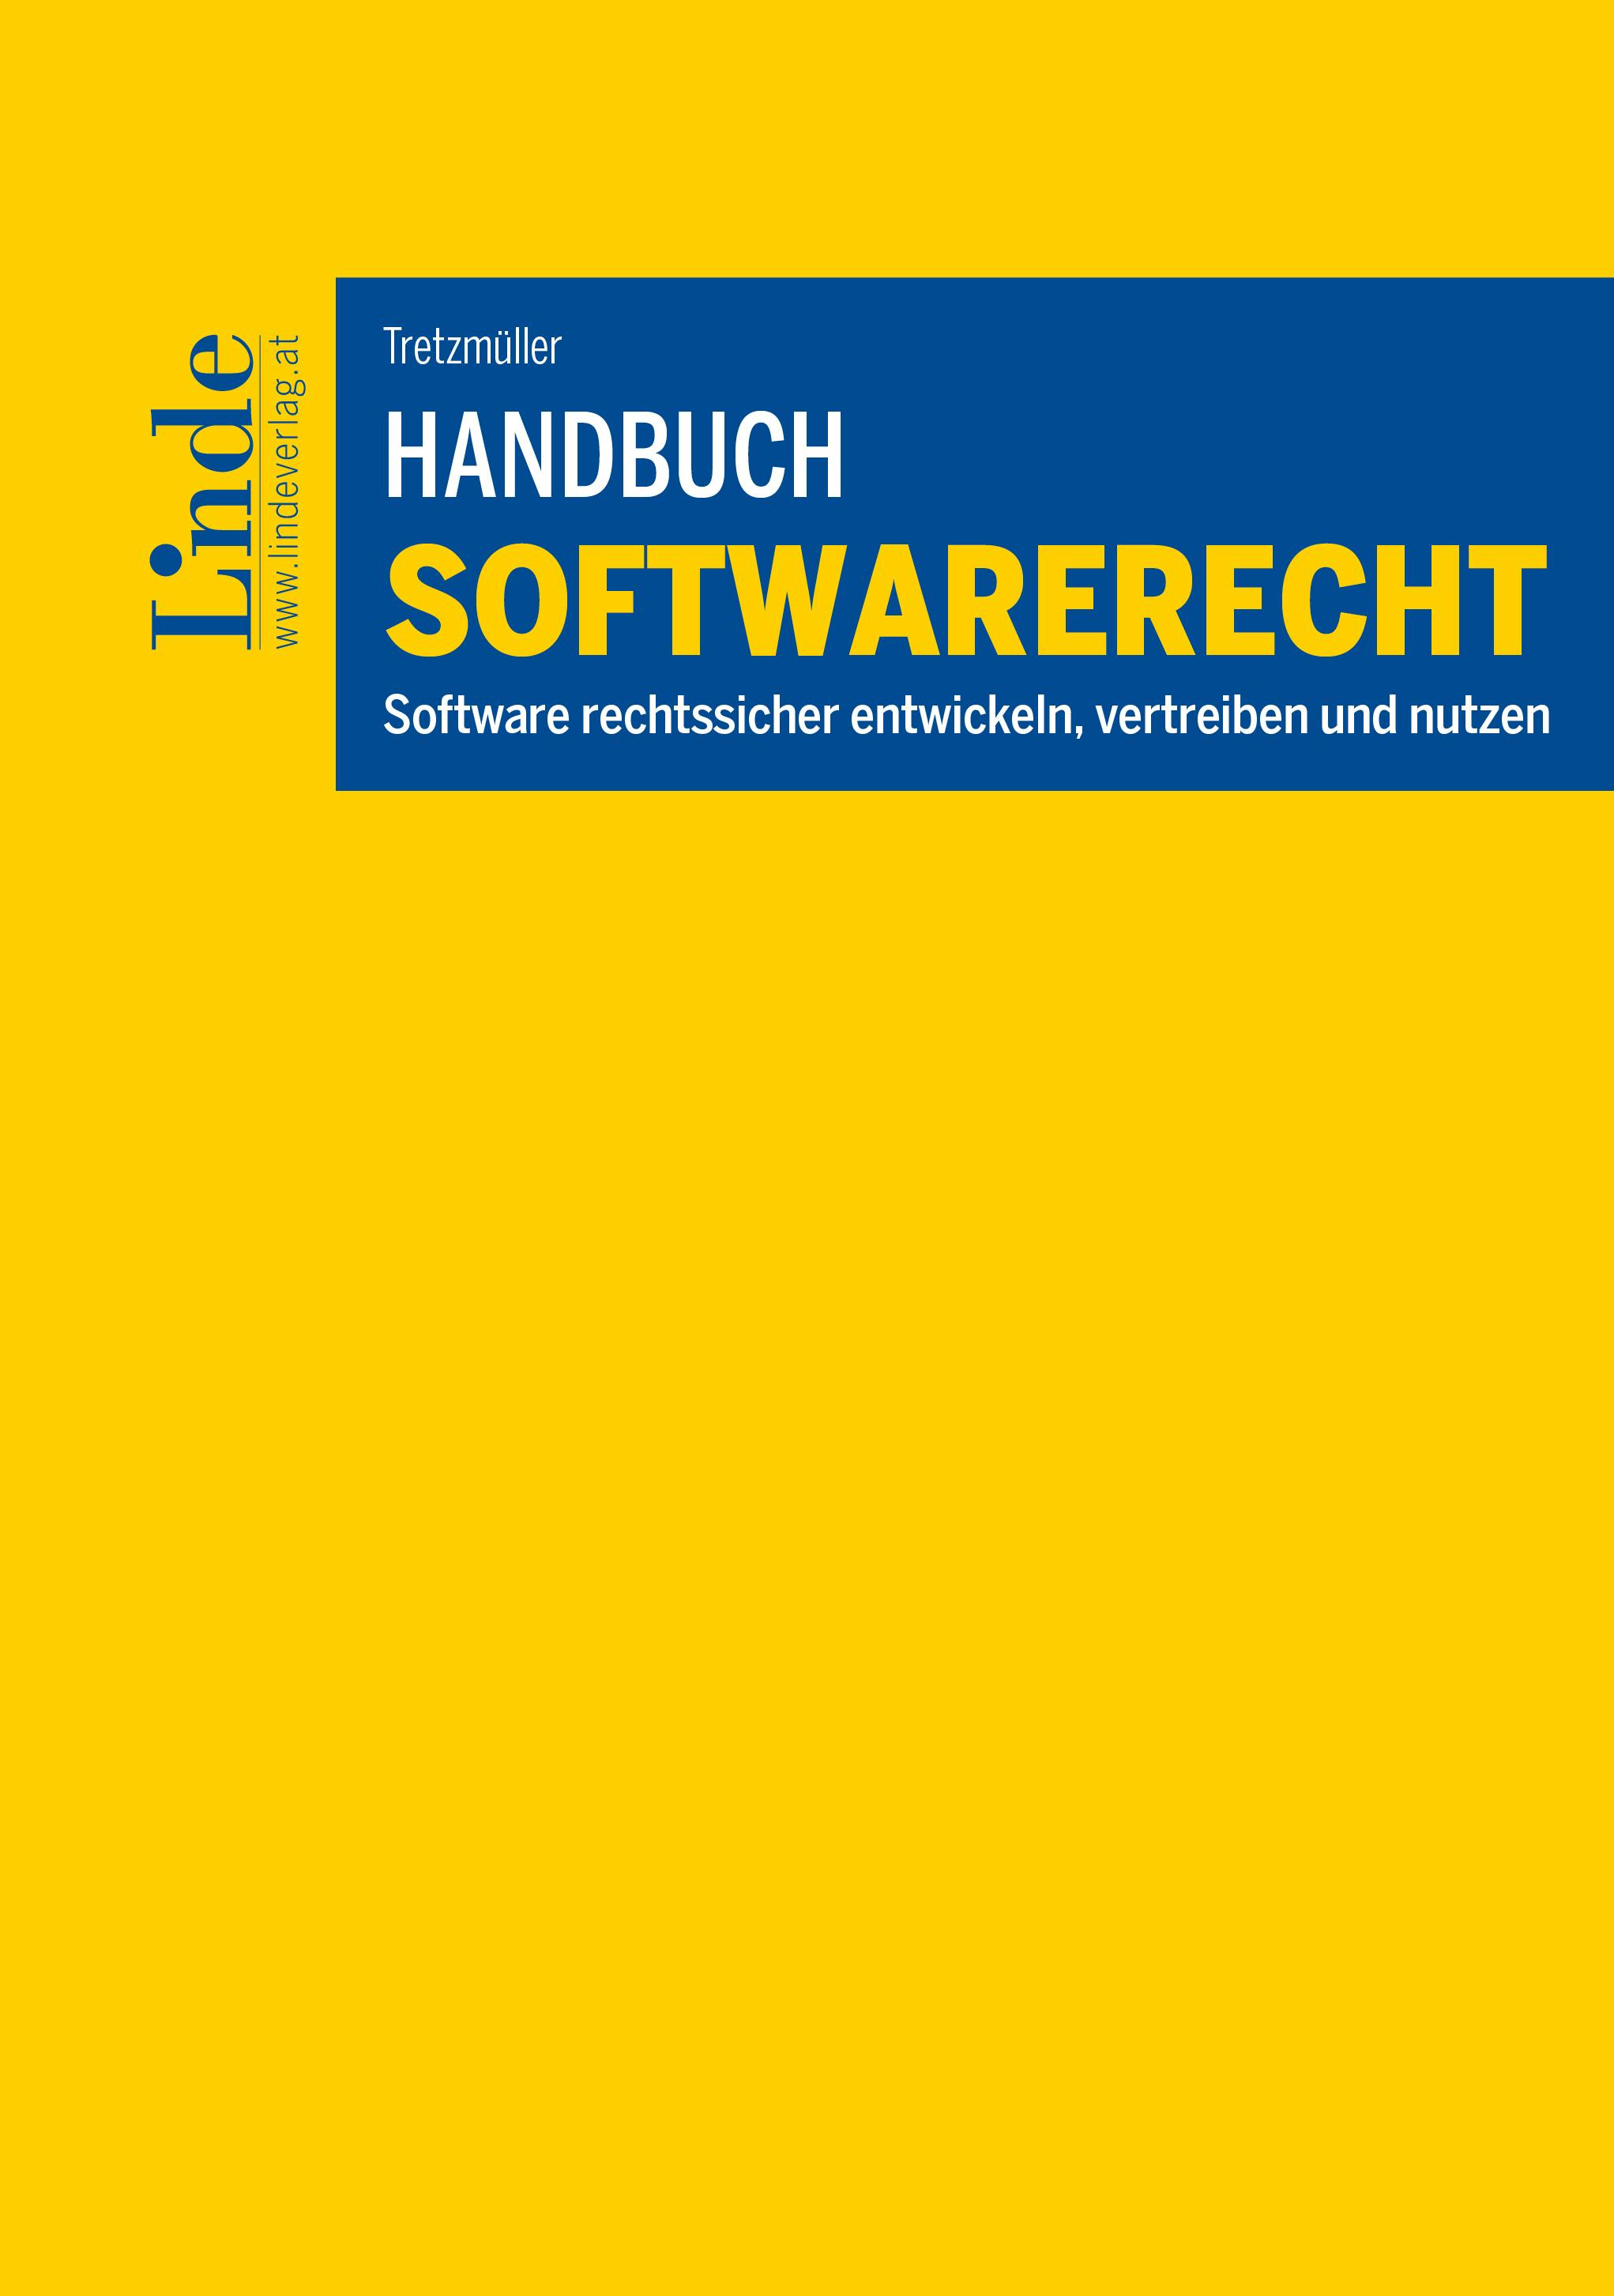 Tretzmüller
Handbuch Softwarerecht
Software rechtssicher entwickeln, vertreiben und nutzen